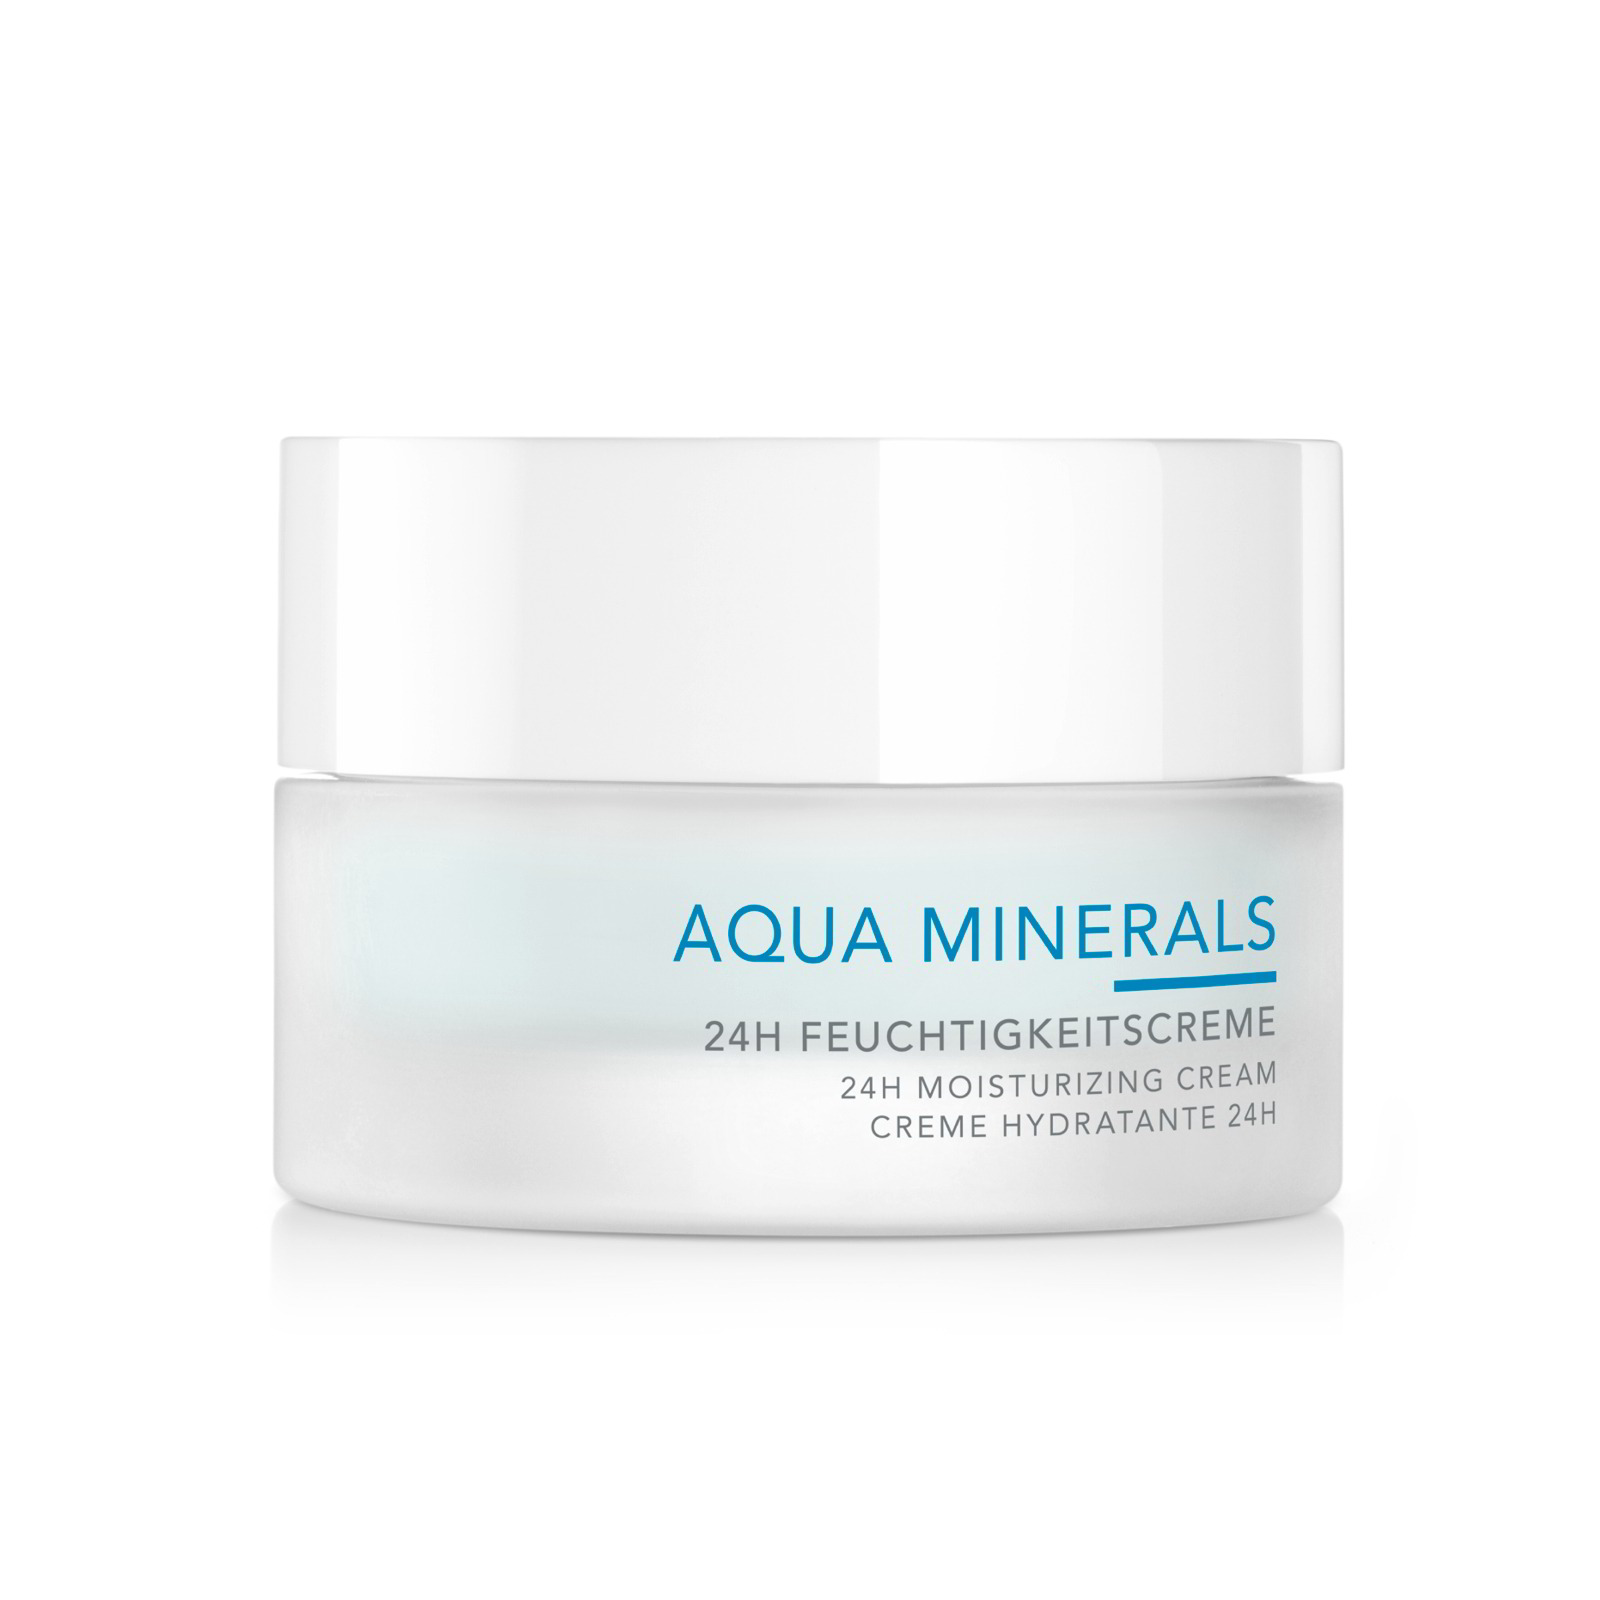 Aqua Minerals 24h Pflege